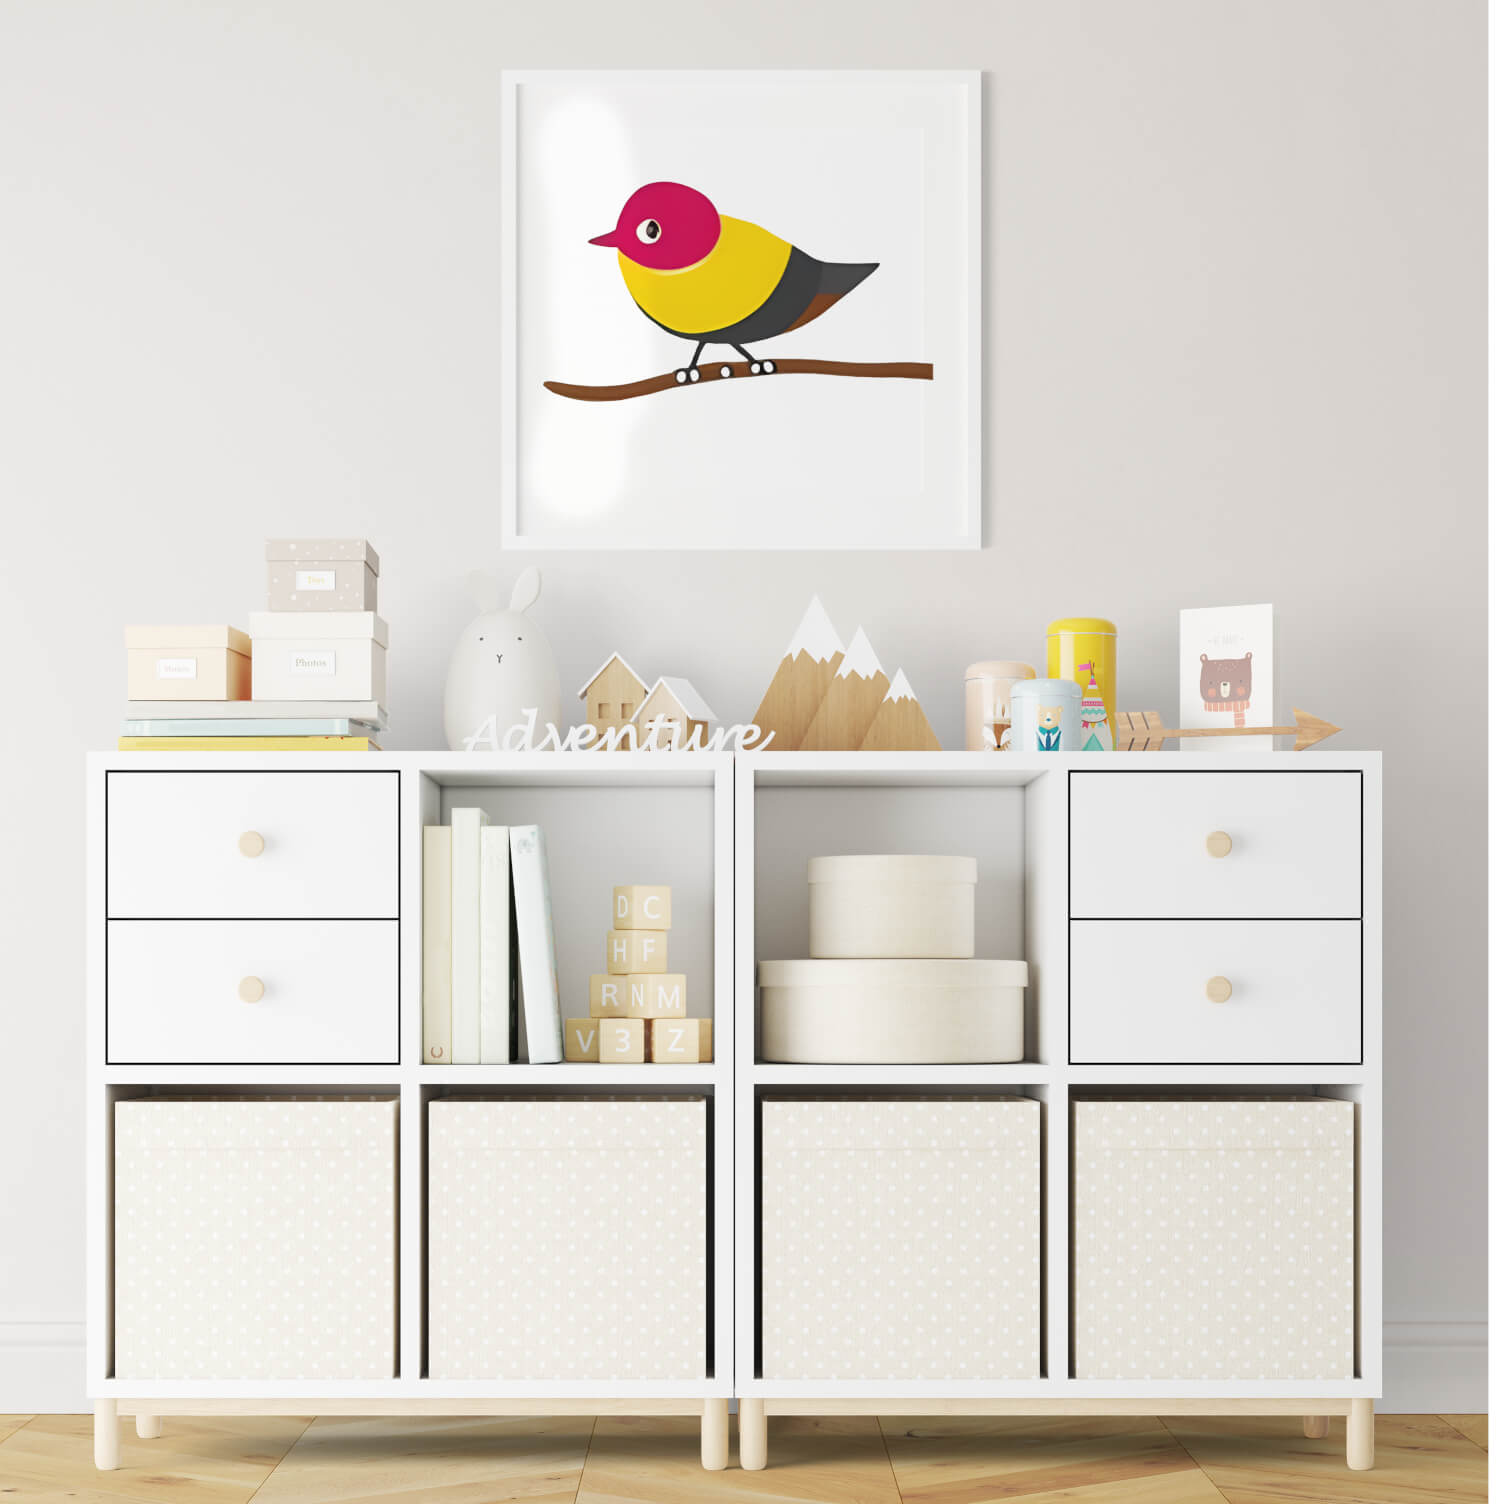 Modern Bird Decor Collection - Wall Art Print Set of 4